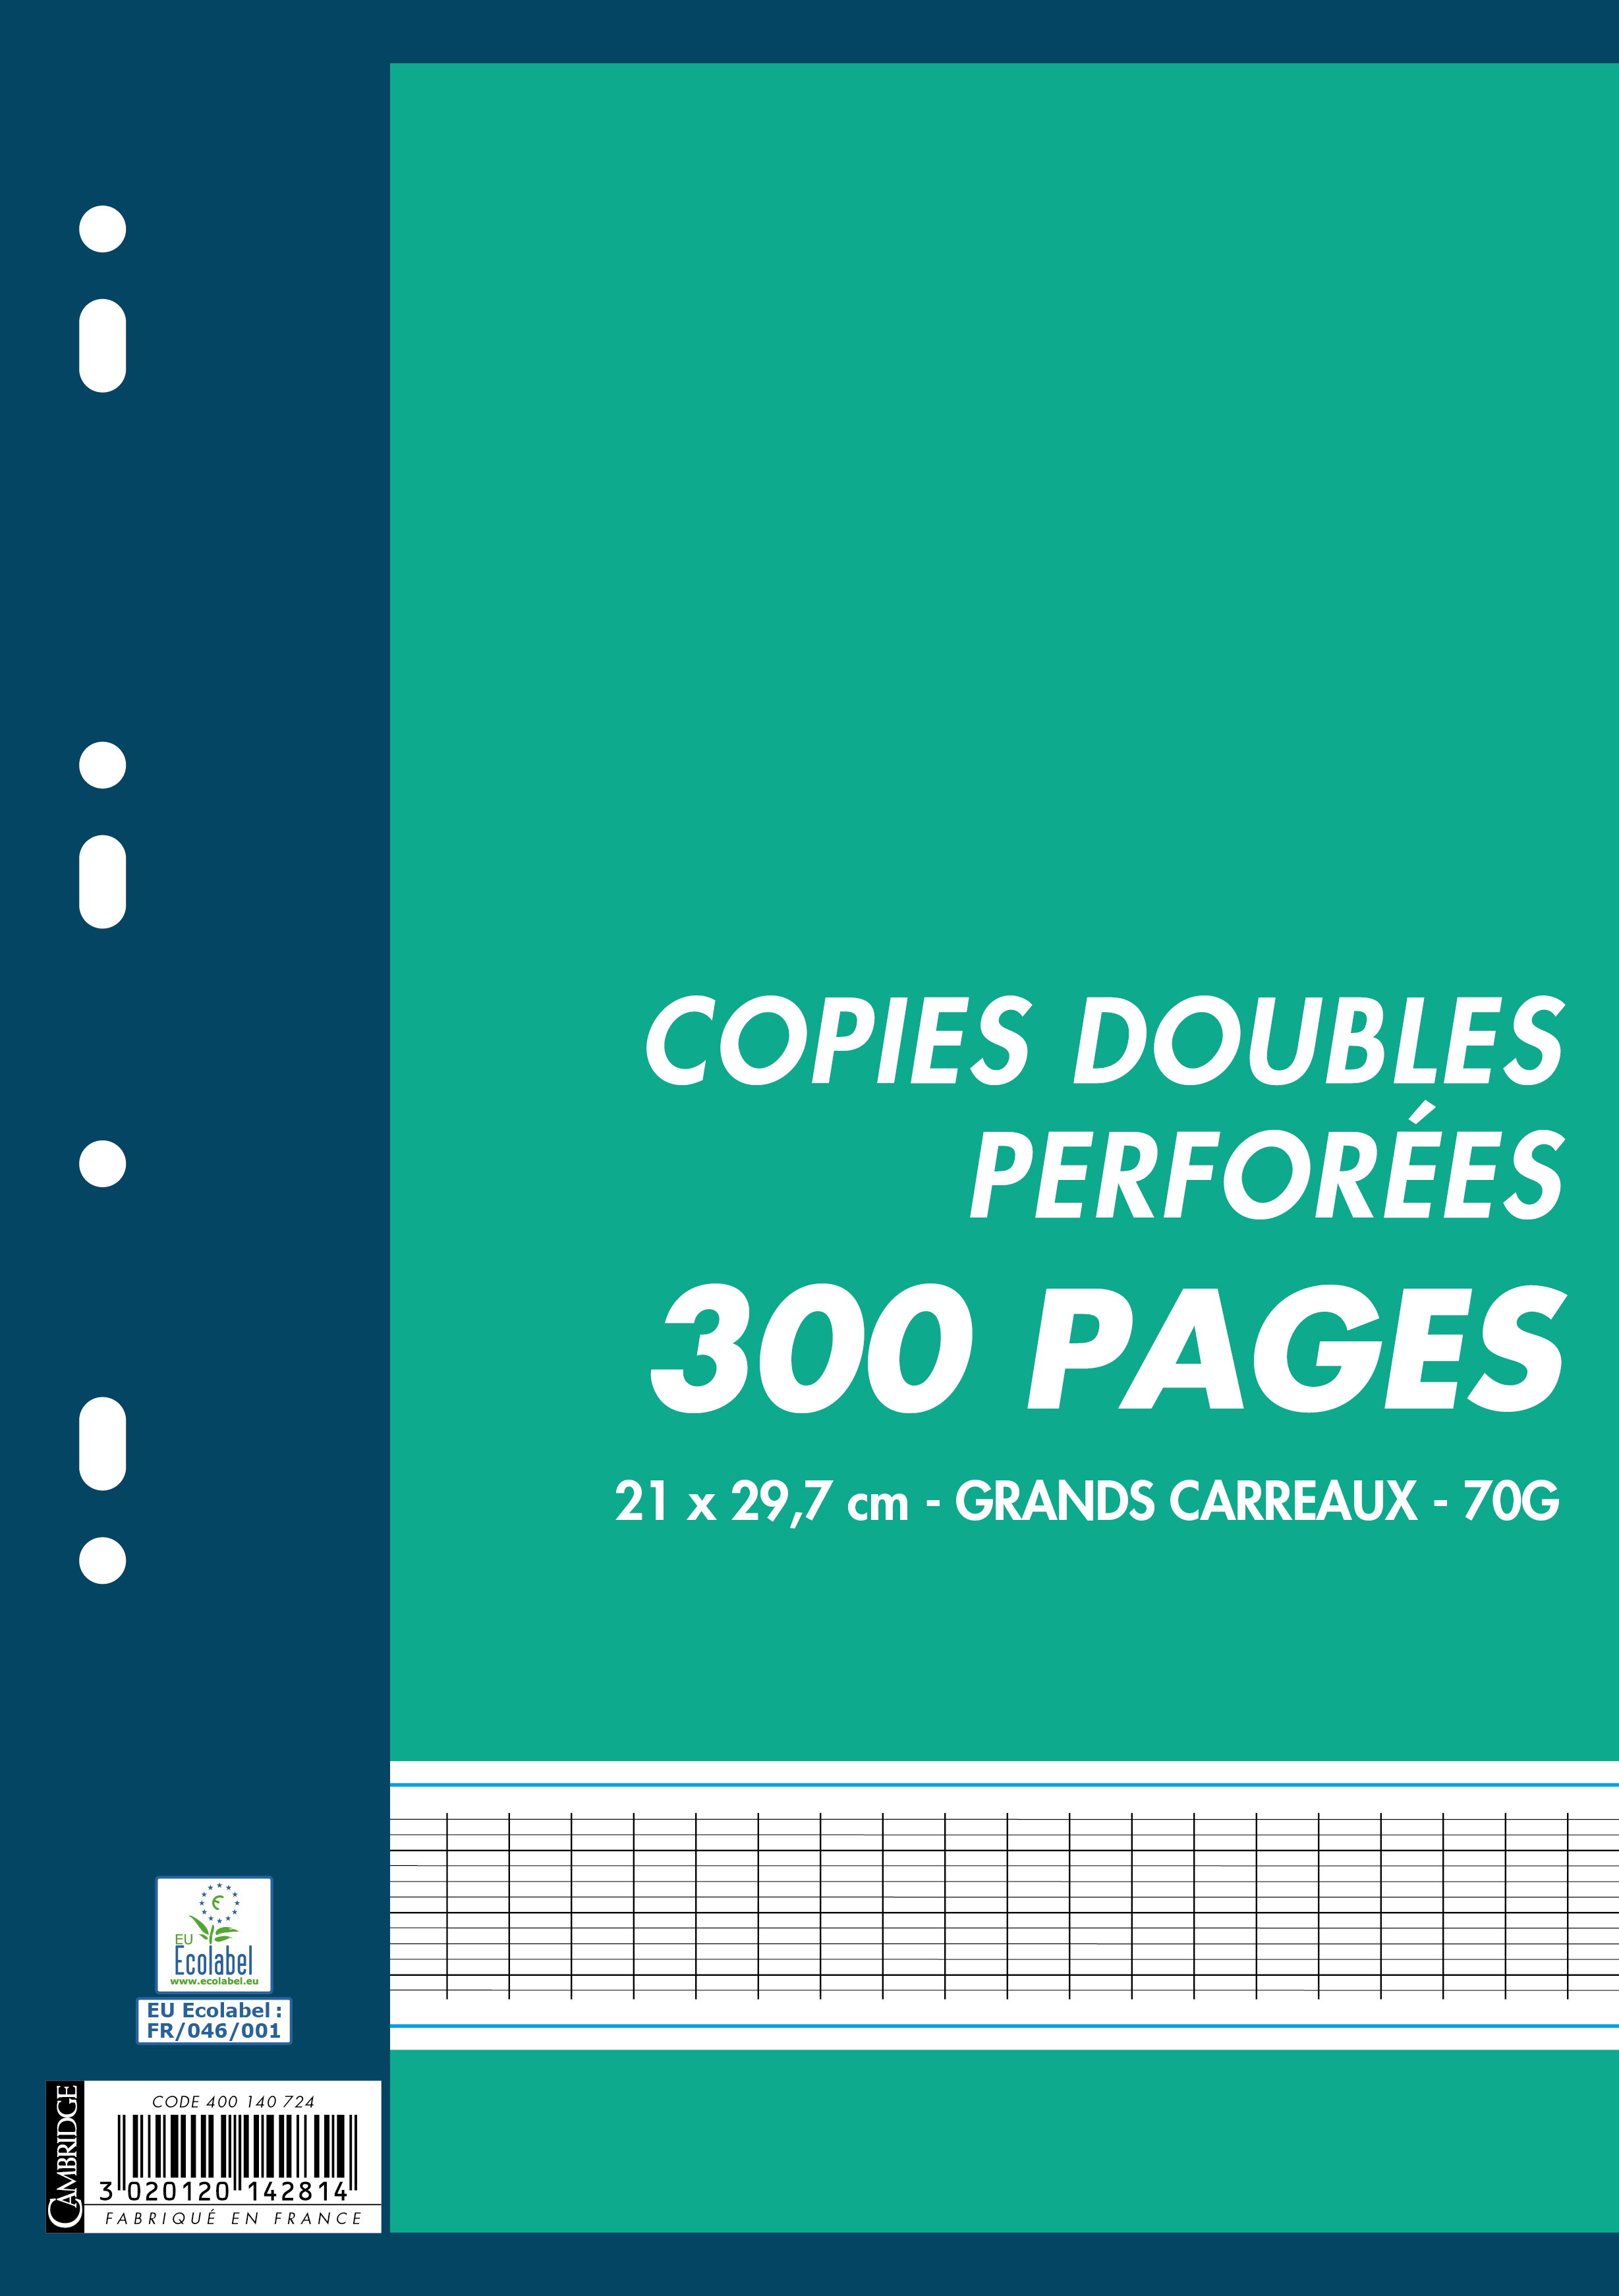 Copies doubles 300 pages A4 petits carreaux (5x5 mm) perforées 21x29,7 -90g  NEUF